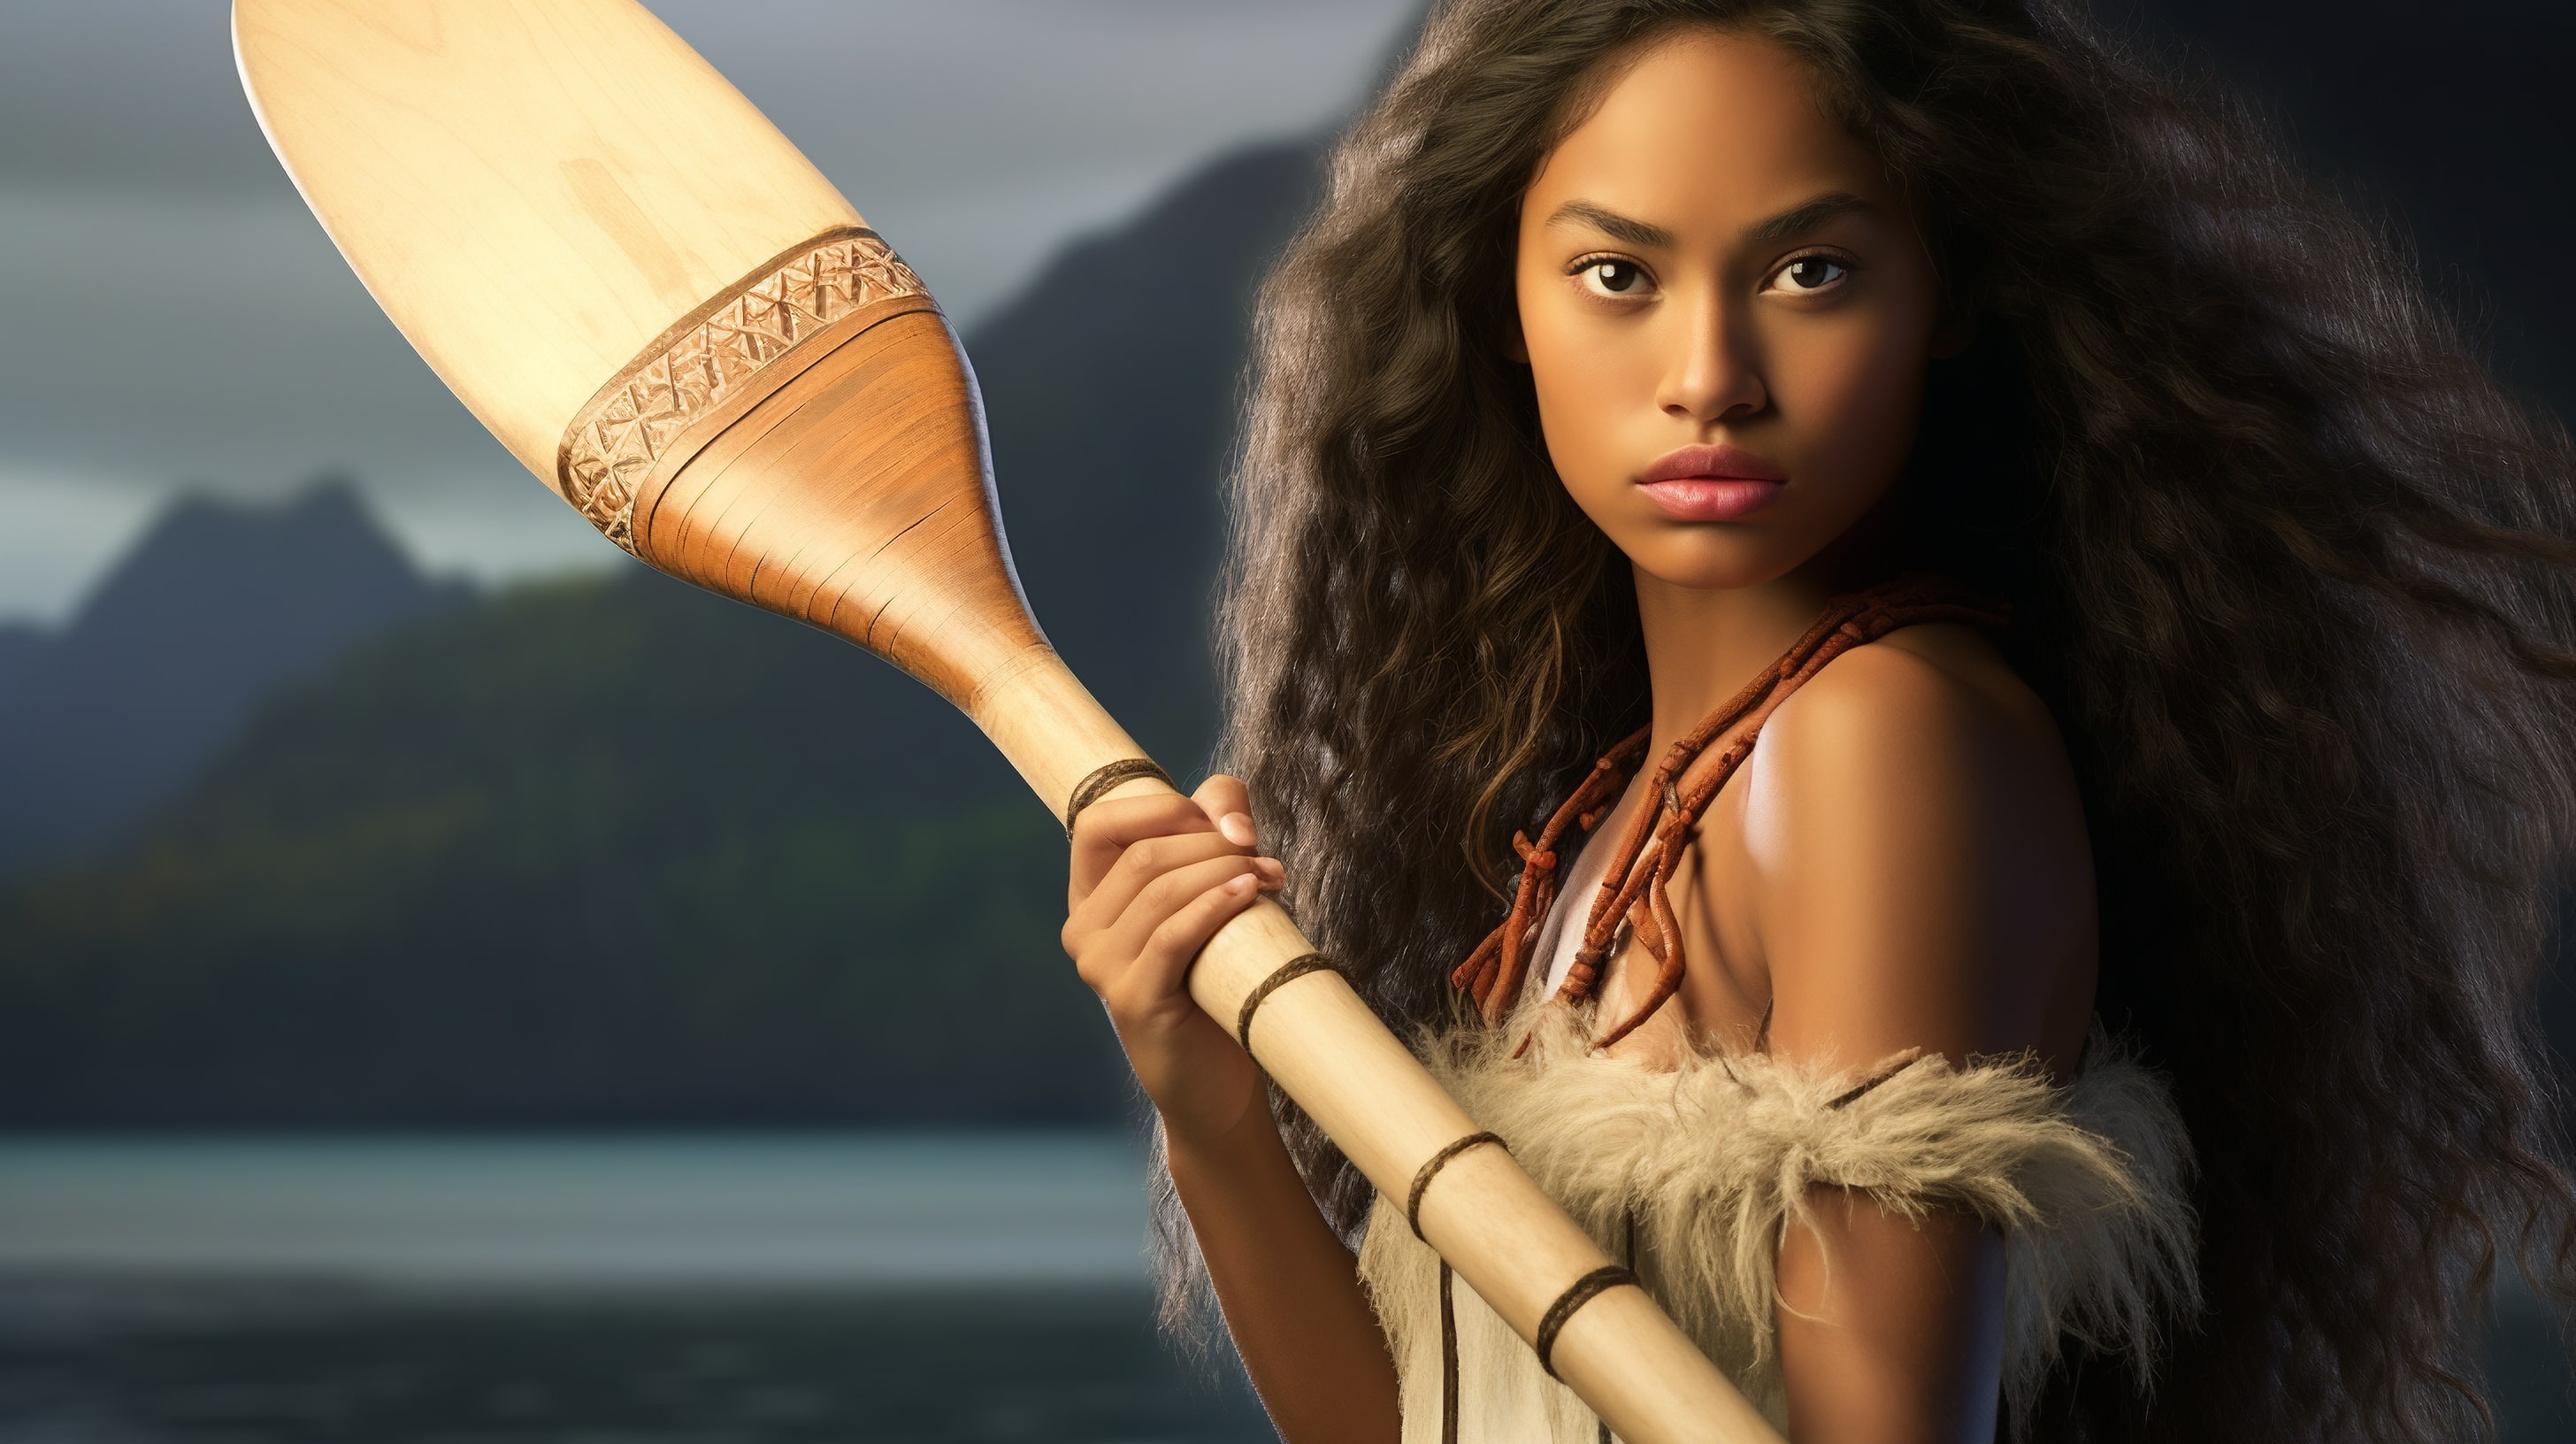 Девушка-островитянка держит в руке лодочное весло